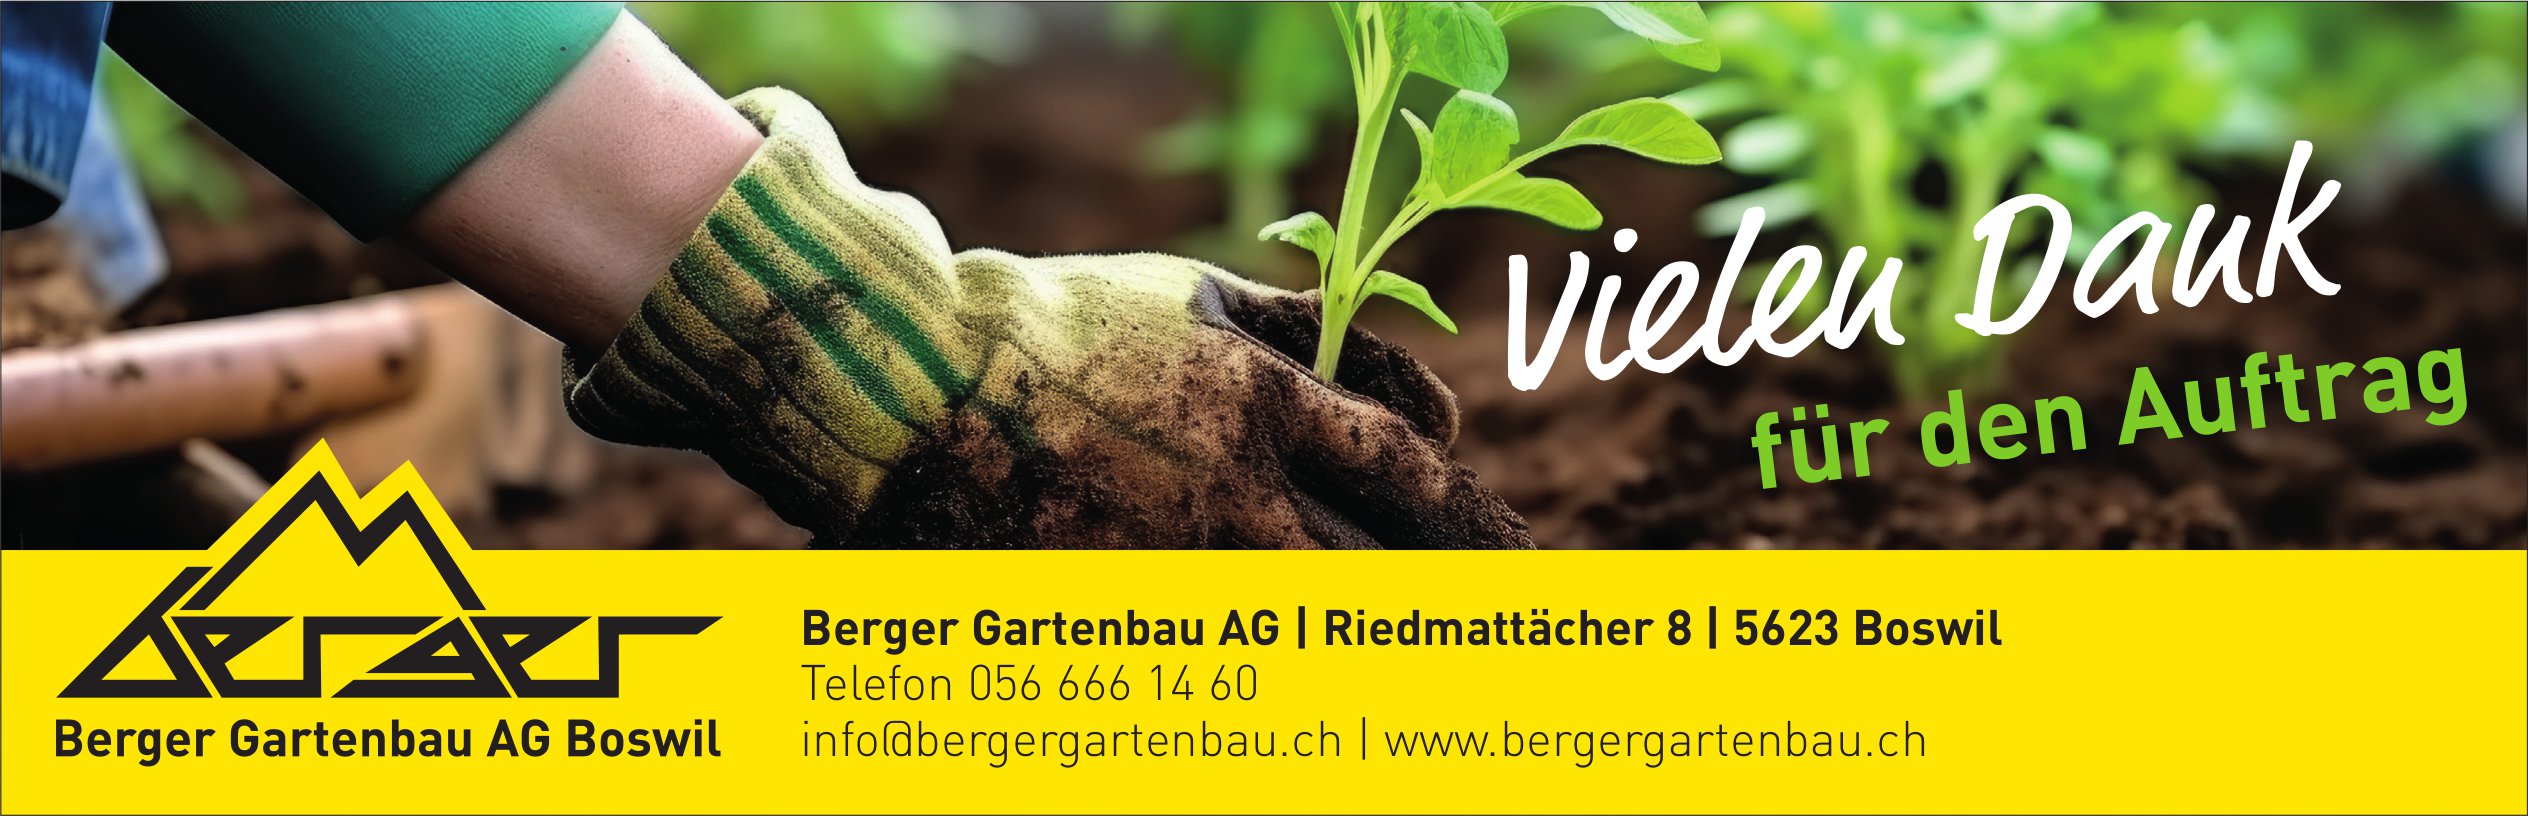 Berger Gartenbau AG, Boswil - Vielen Dank für den Auftrag